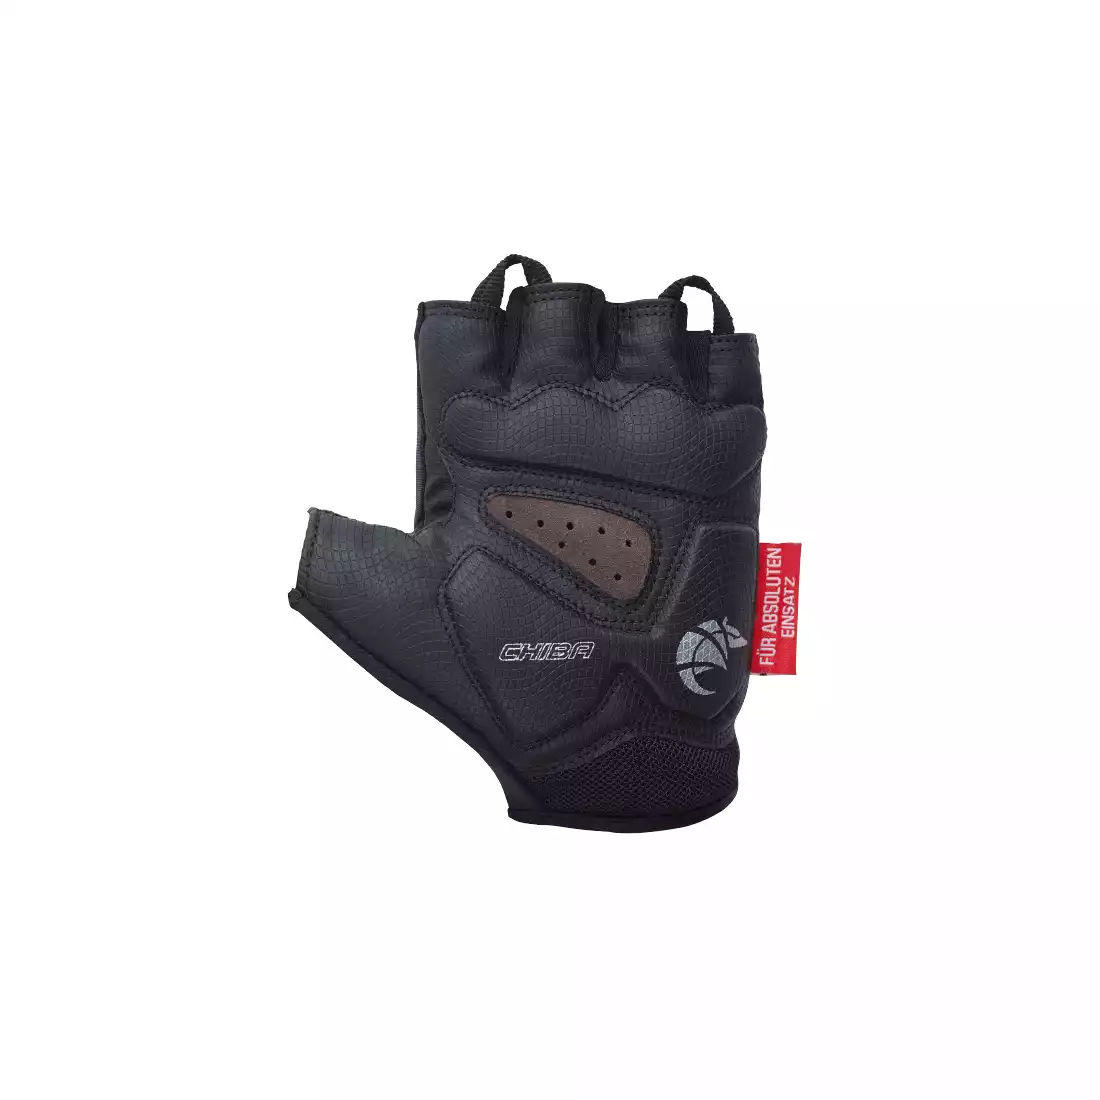 Chiba Handschuhe Gel Premium kurz Größe XS schwarz 